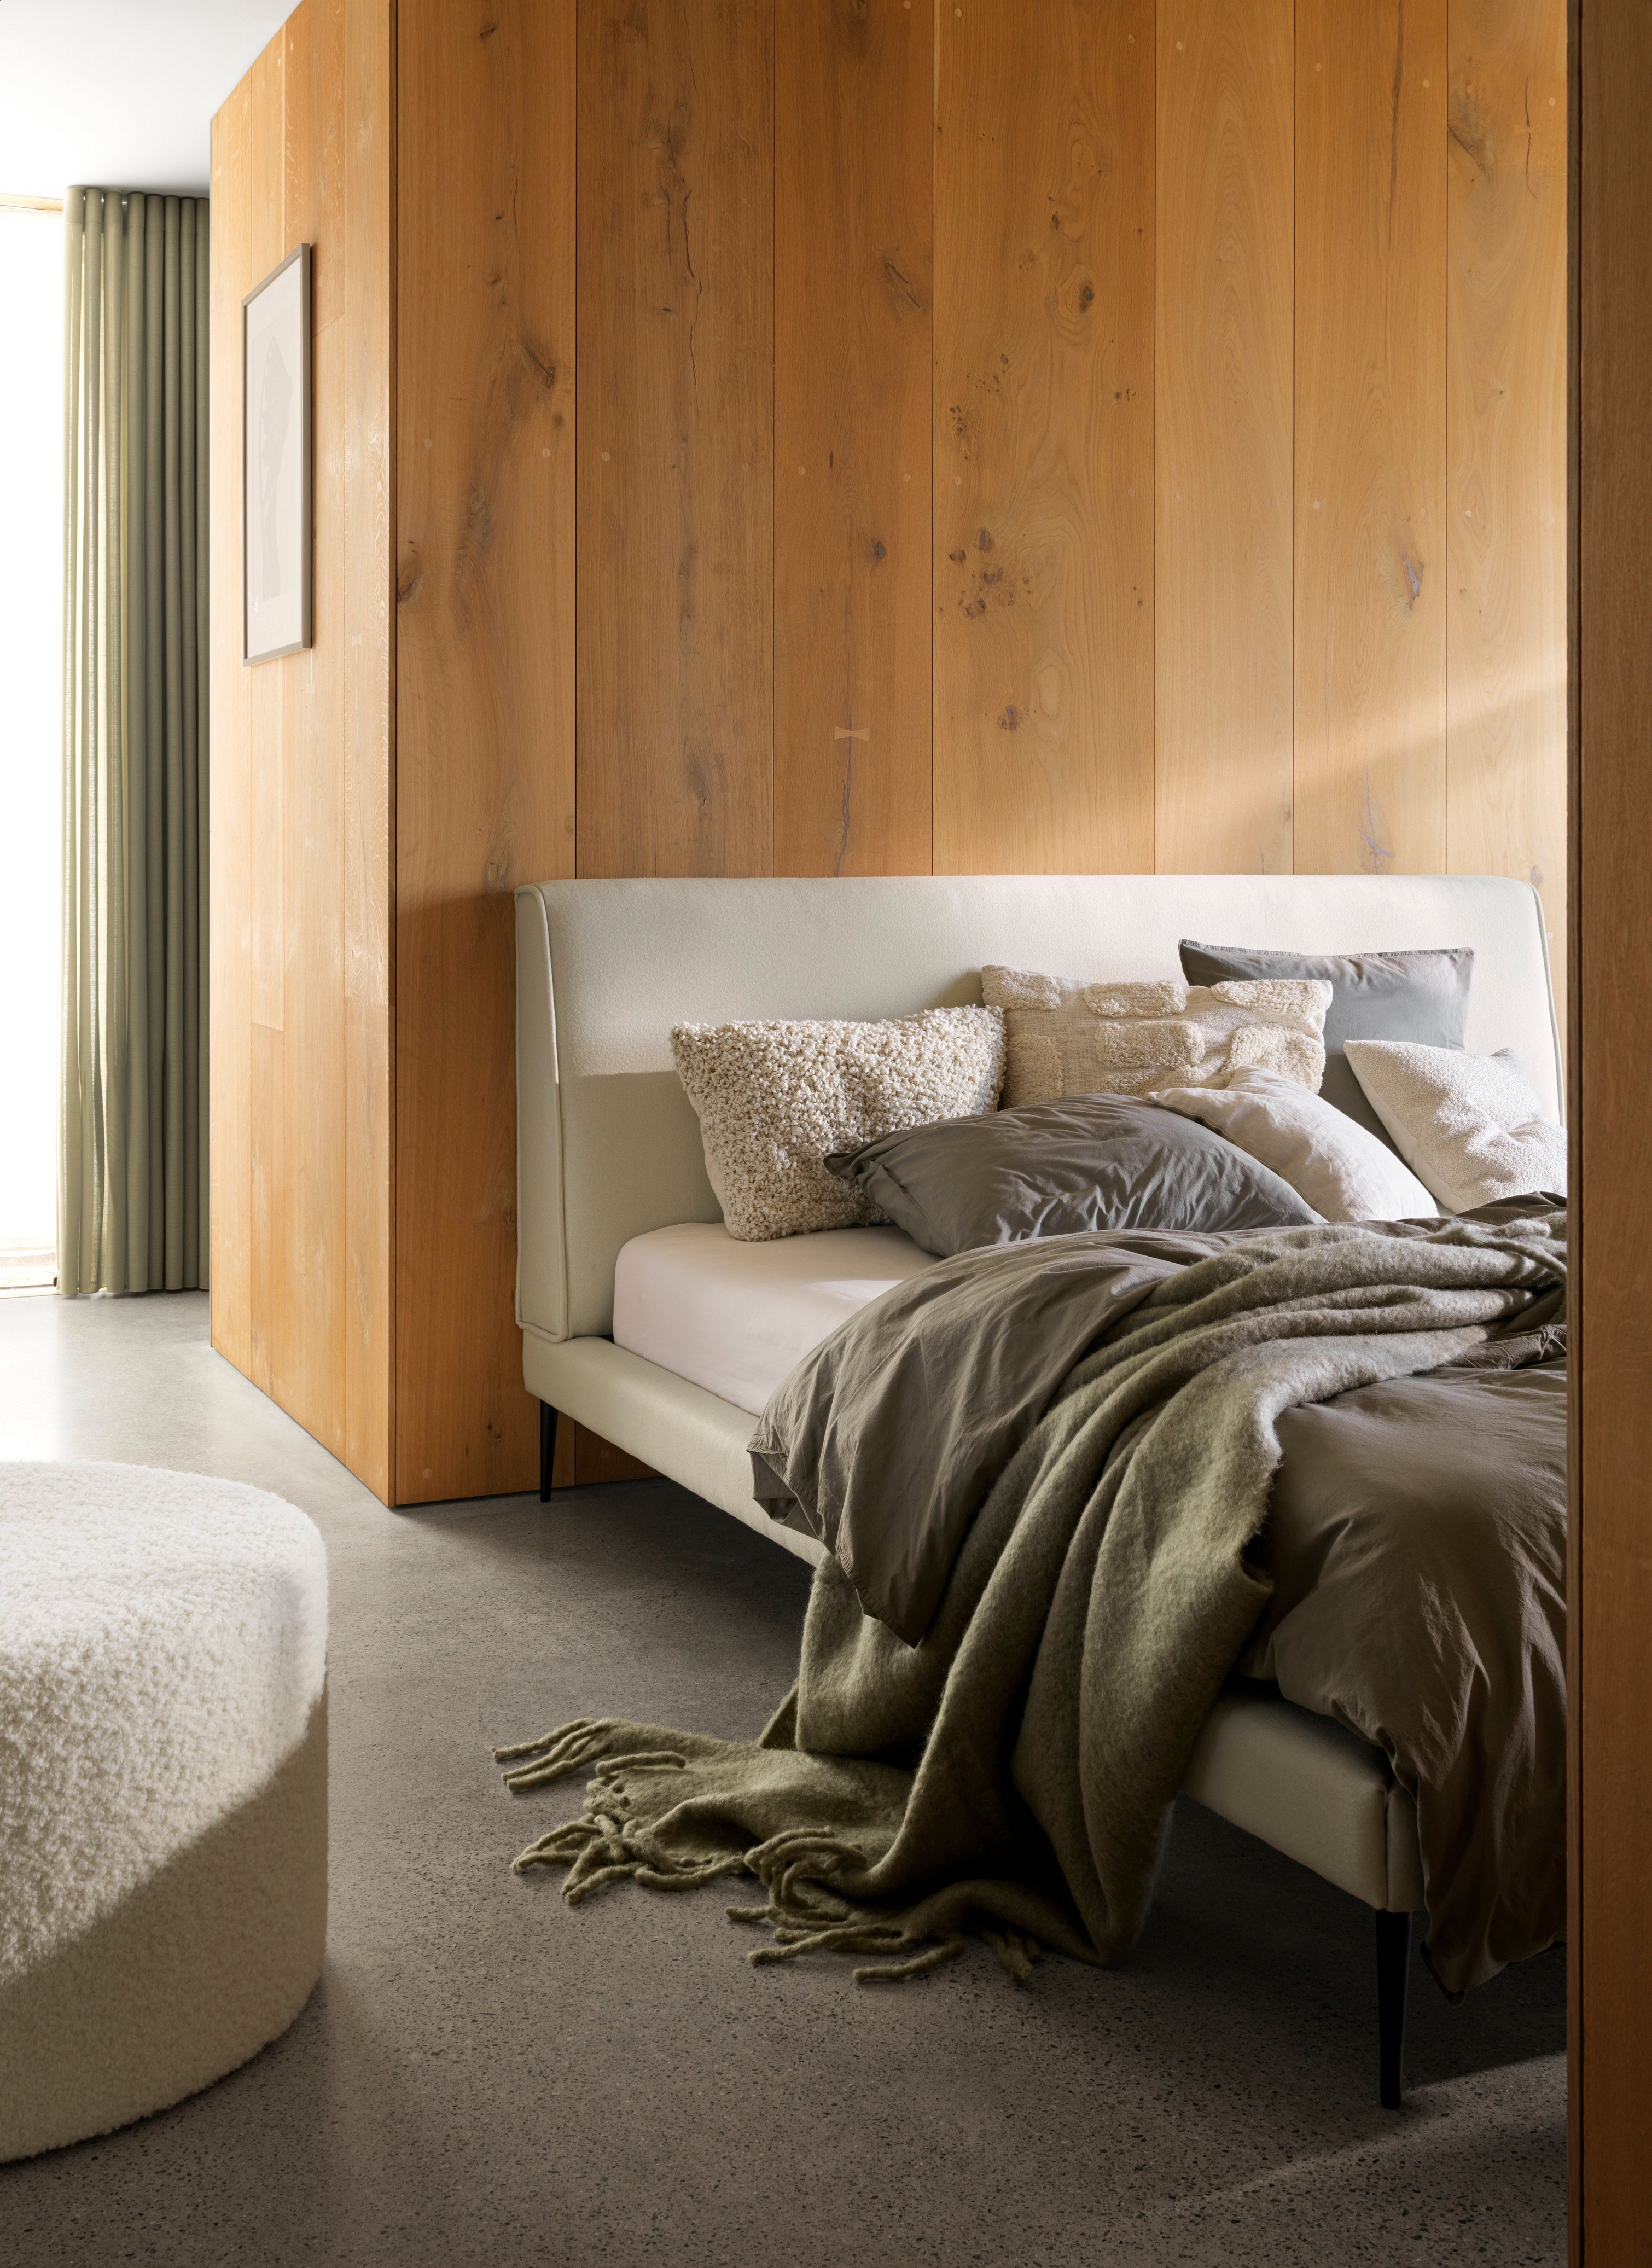 Gezellig bed met zachte plaids en kussens tegen een houten muur en zachte verlichting.